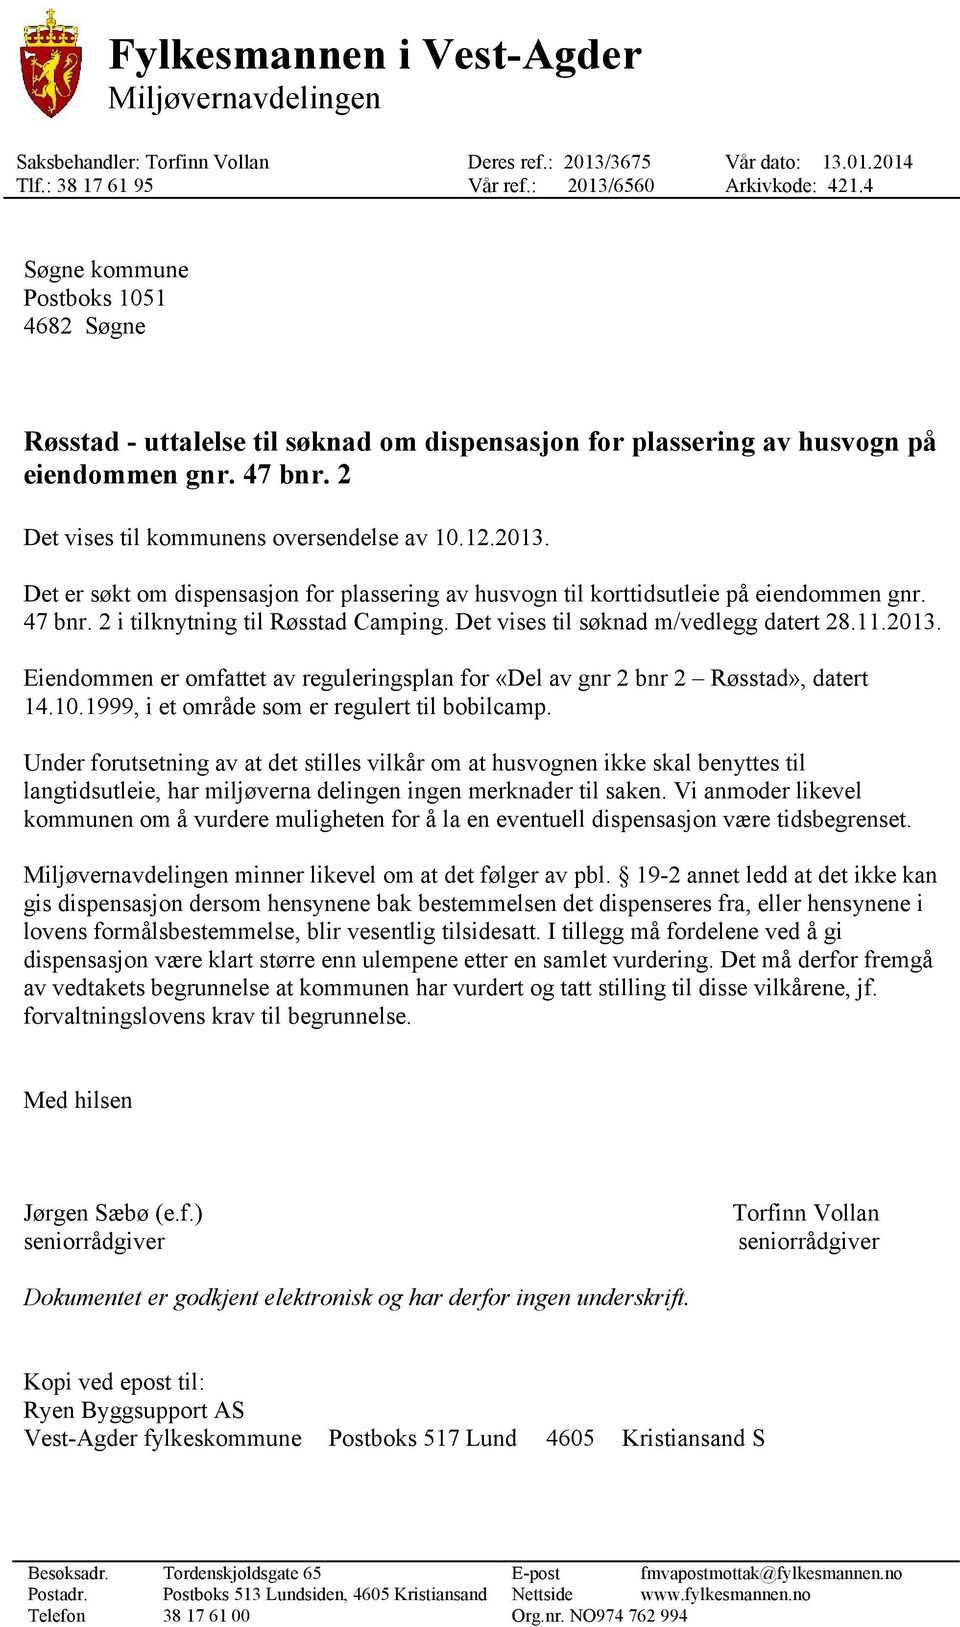 Det er søkt om dispensasjon for plassering av husvogn til korttidsutleie på eiendommen gnr. 47 bnr. 2 i tilknytning til Røsstad Camping. Det vises til søknad m/vedlegg datert 28.11.2013.